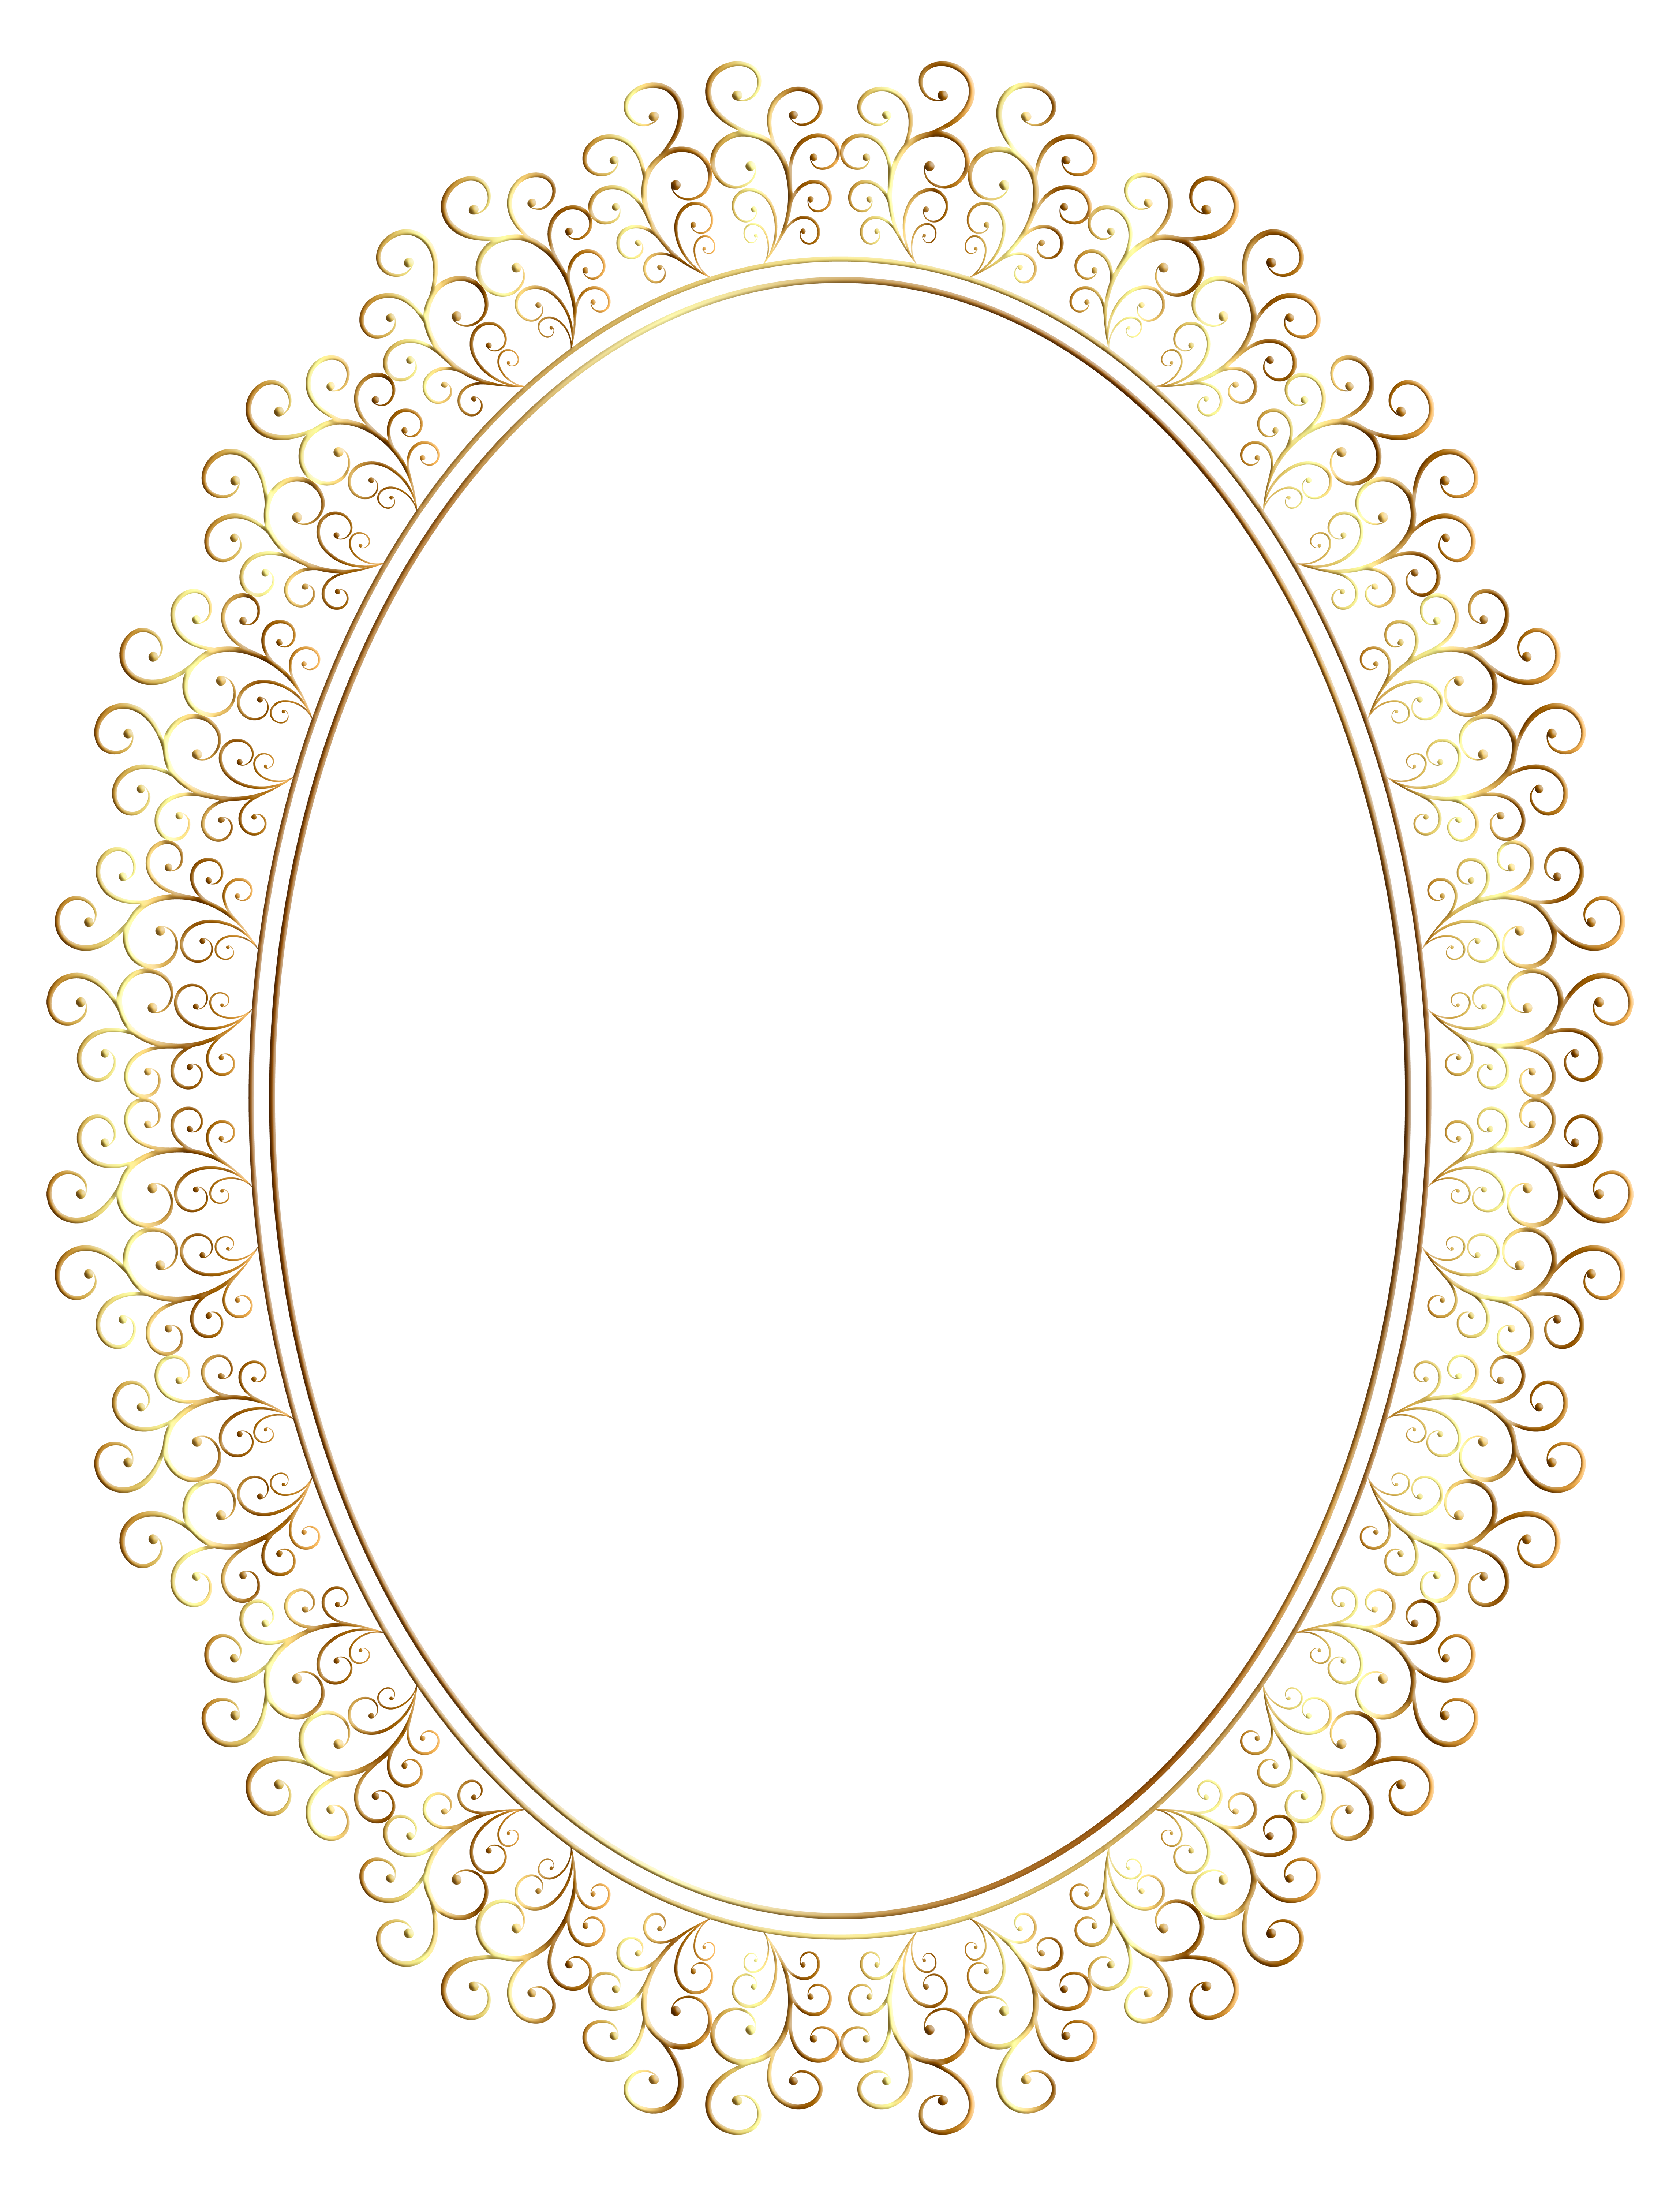 Oval Frame Transparent Clip Art Image